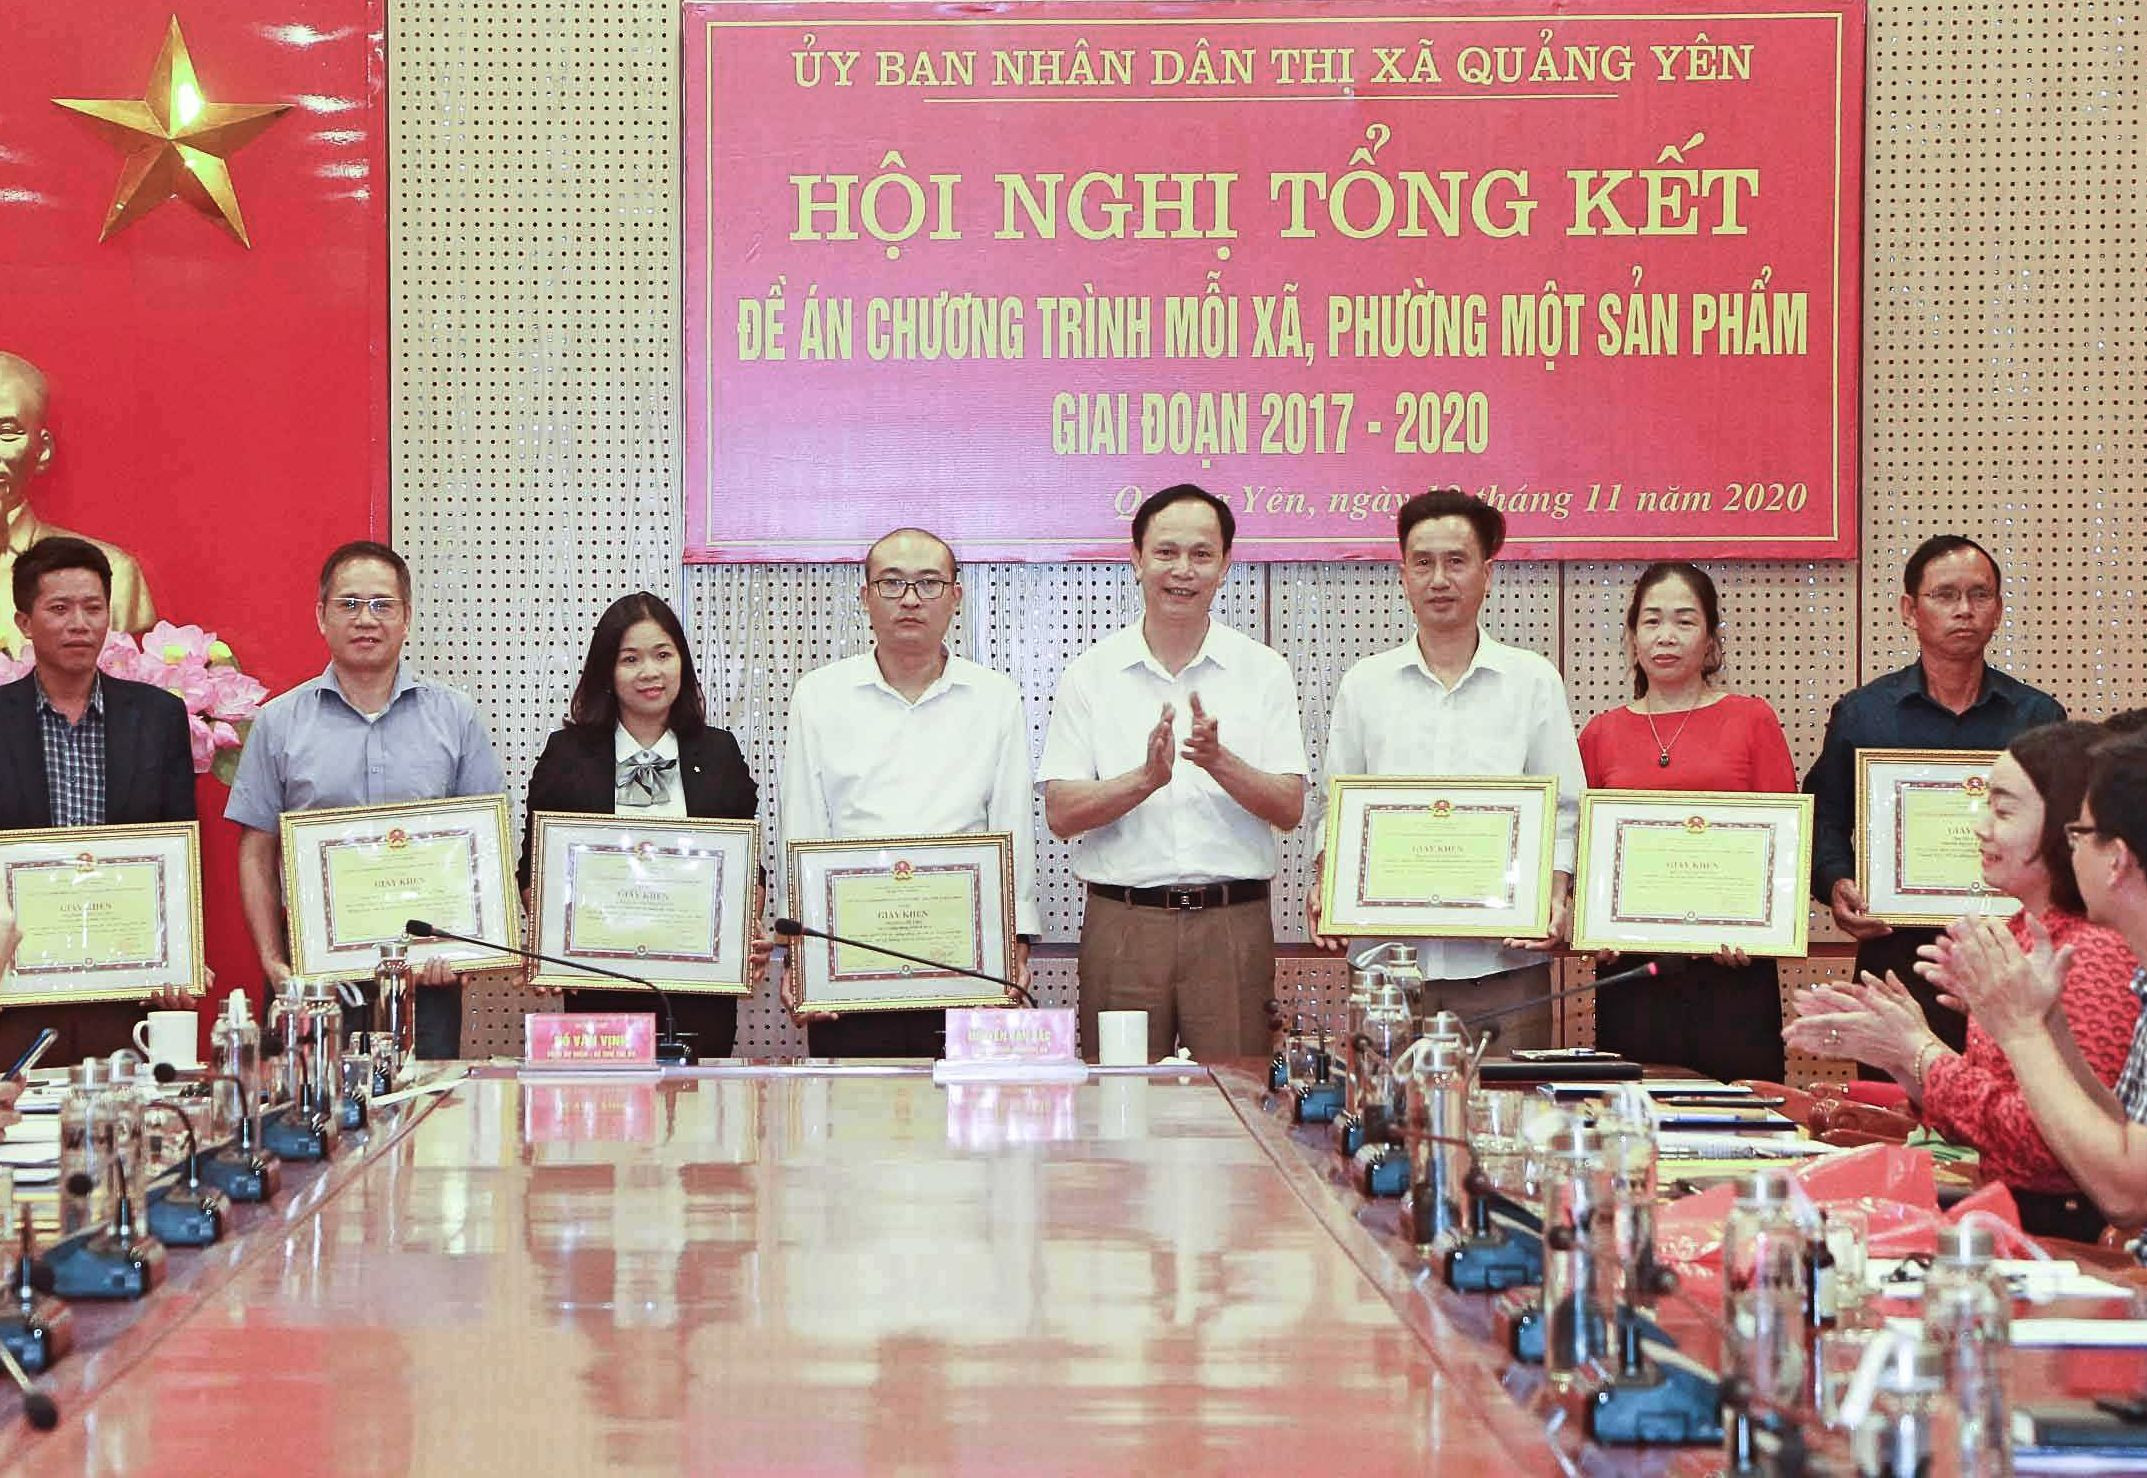 Chị Vũ Thị Thu Hương (thứ 2, từ phải sang) được UBND TX Quảng Yên khen thưởng vì những đóng góp tích cực trong chương trình OCOP giai đoạn 2017-2020